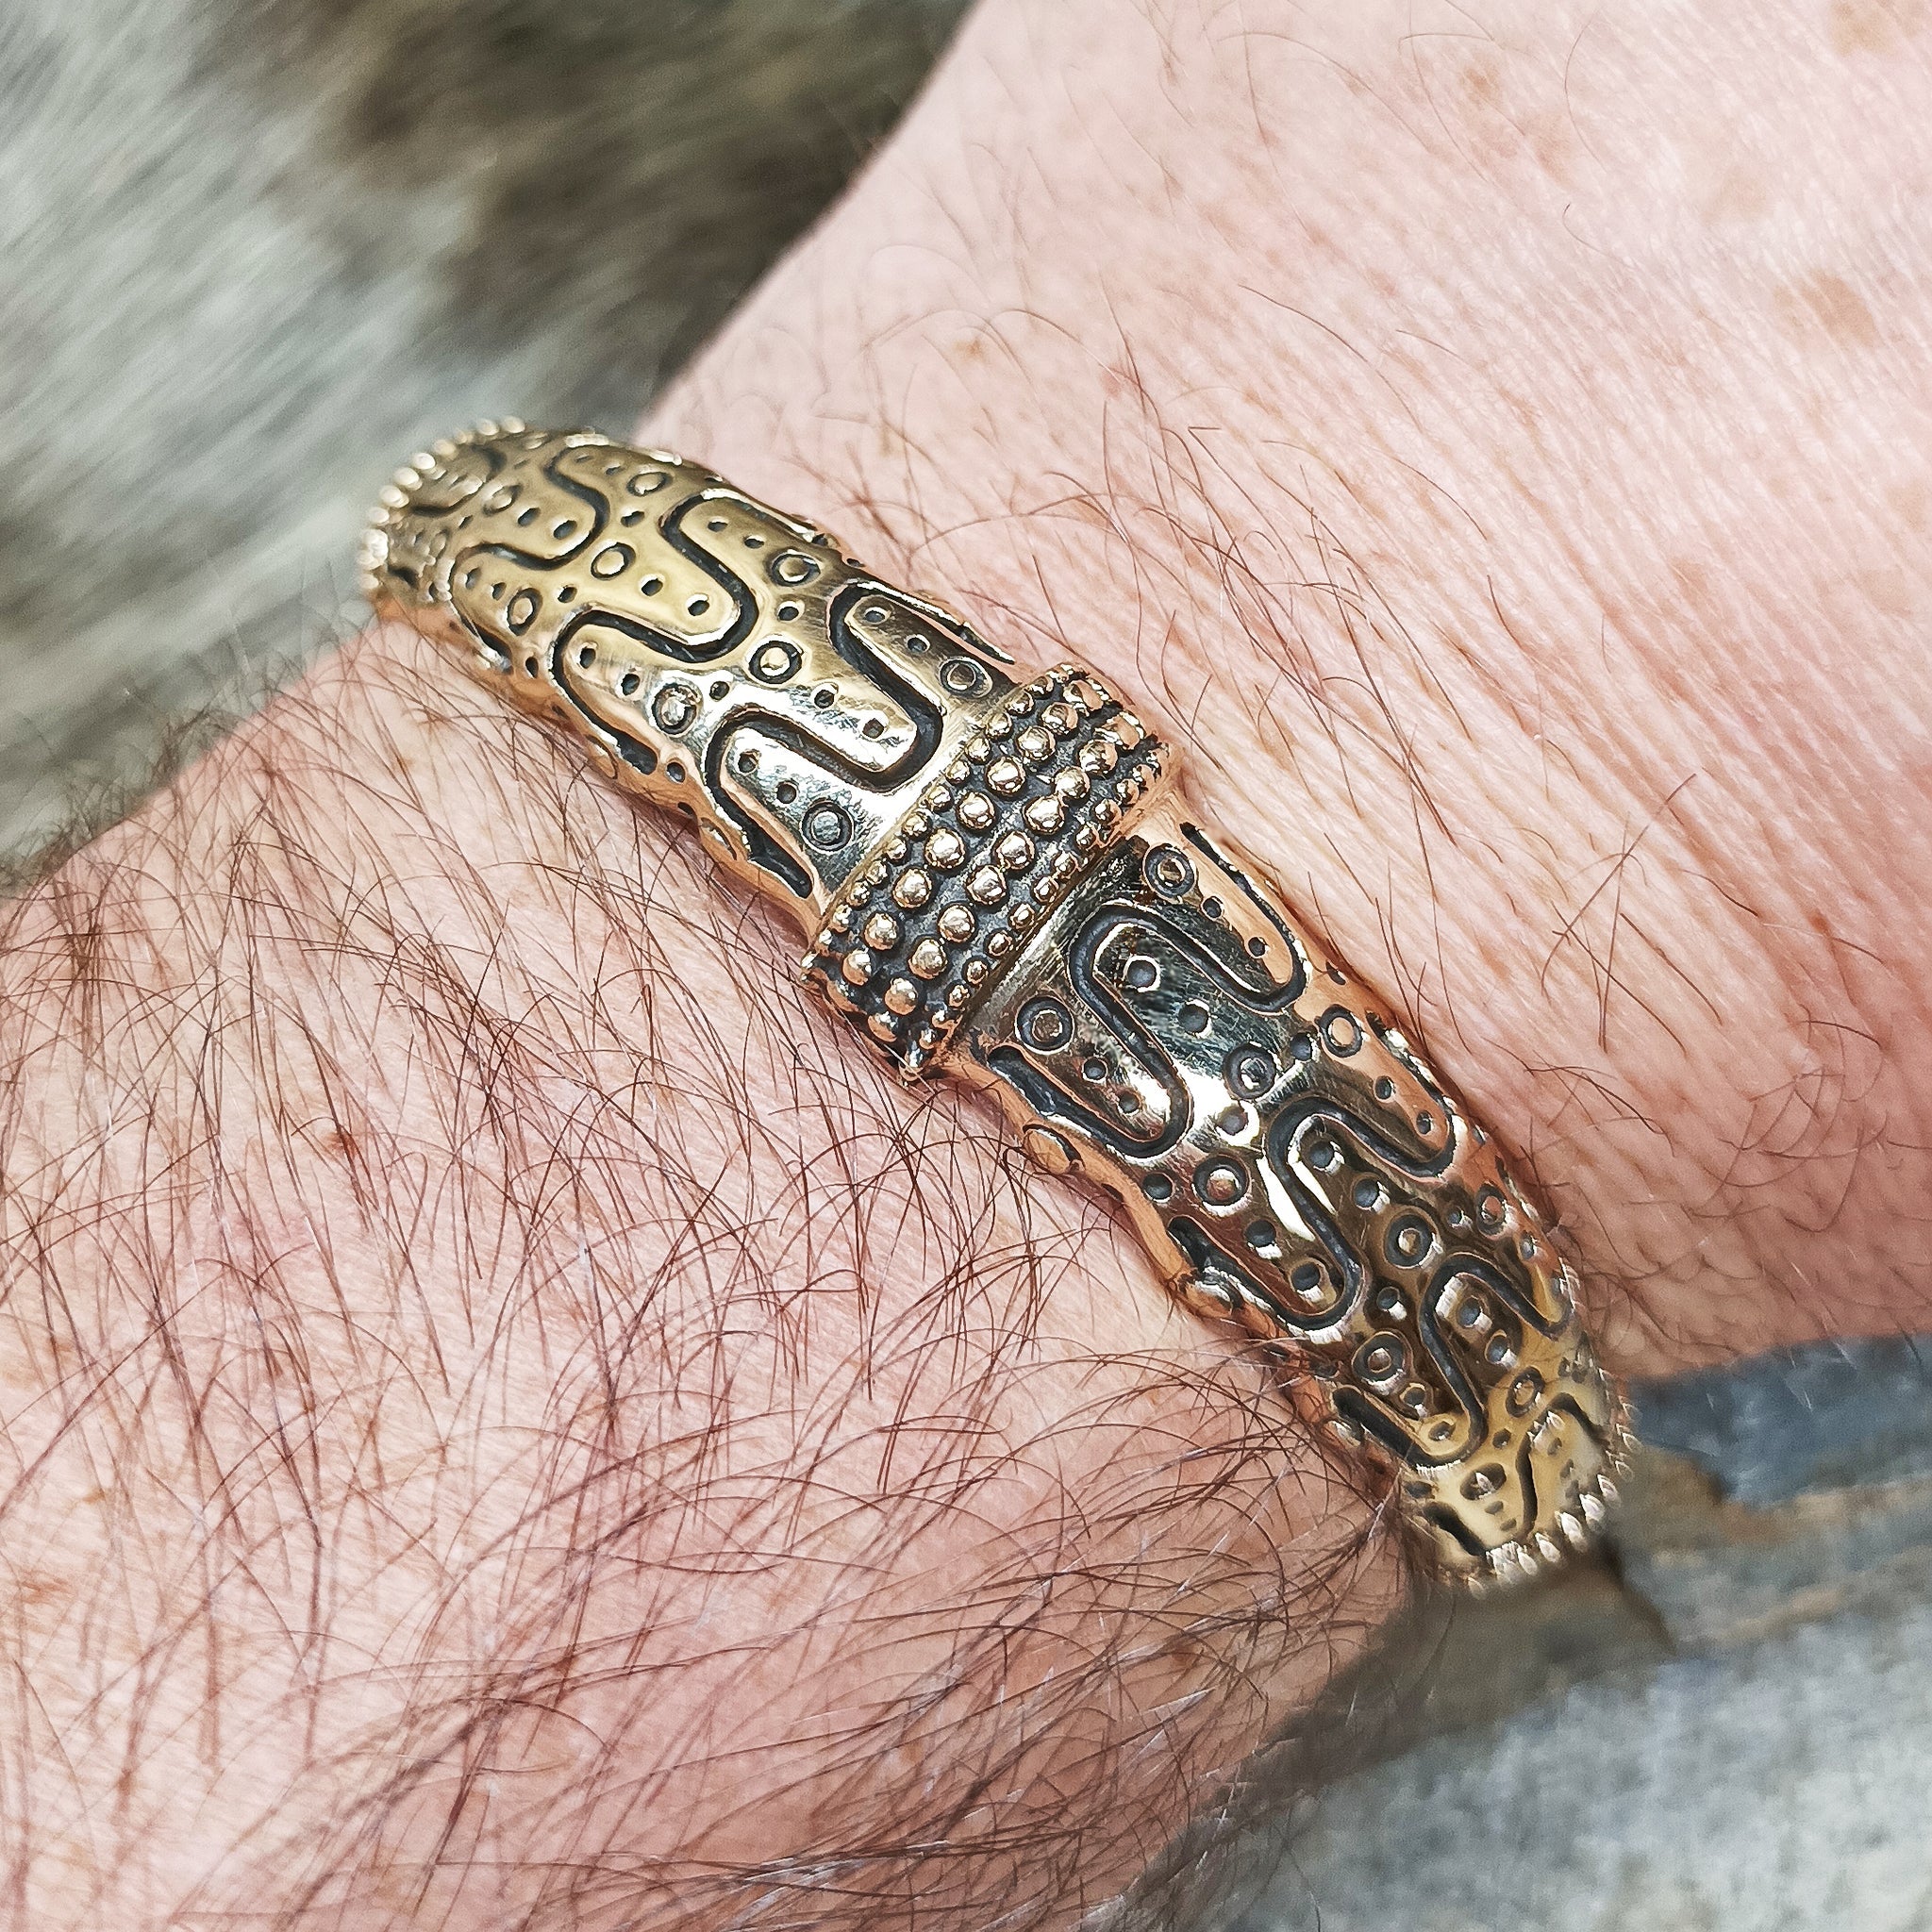 Danish Viking Bronze Bracelet from Falster on Wrist